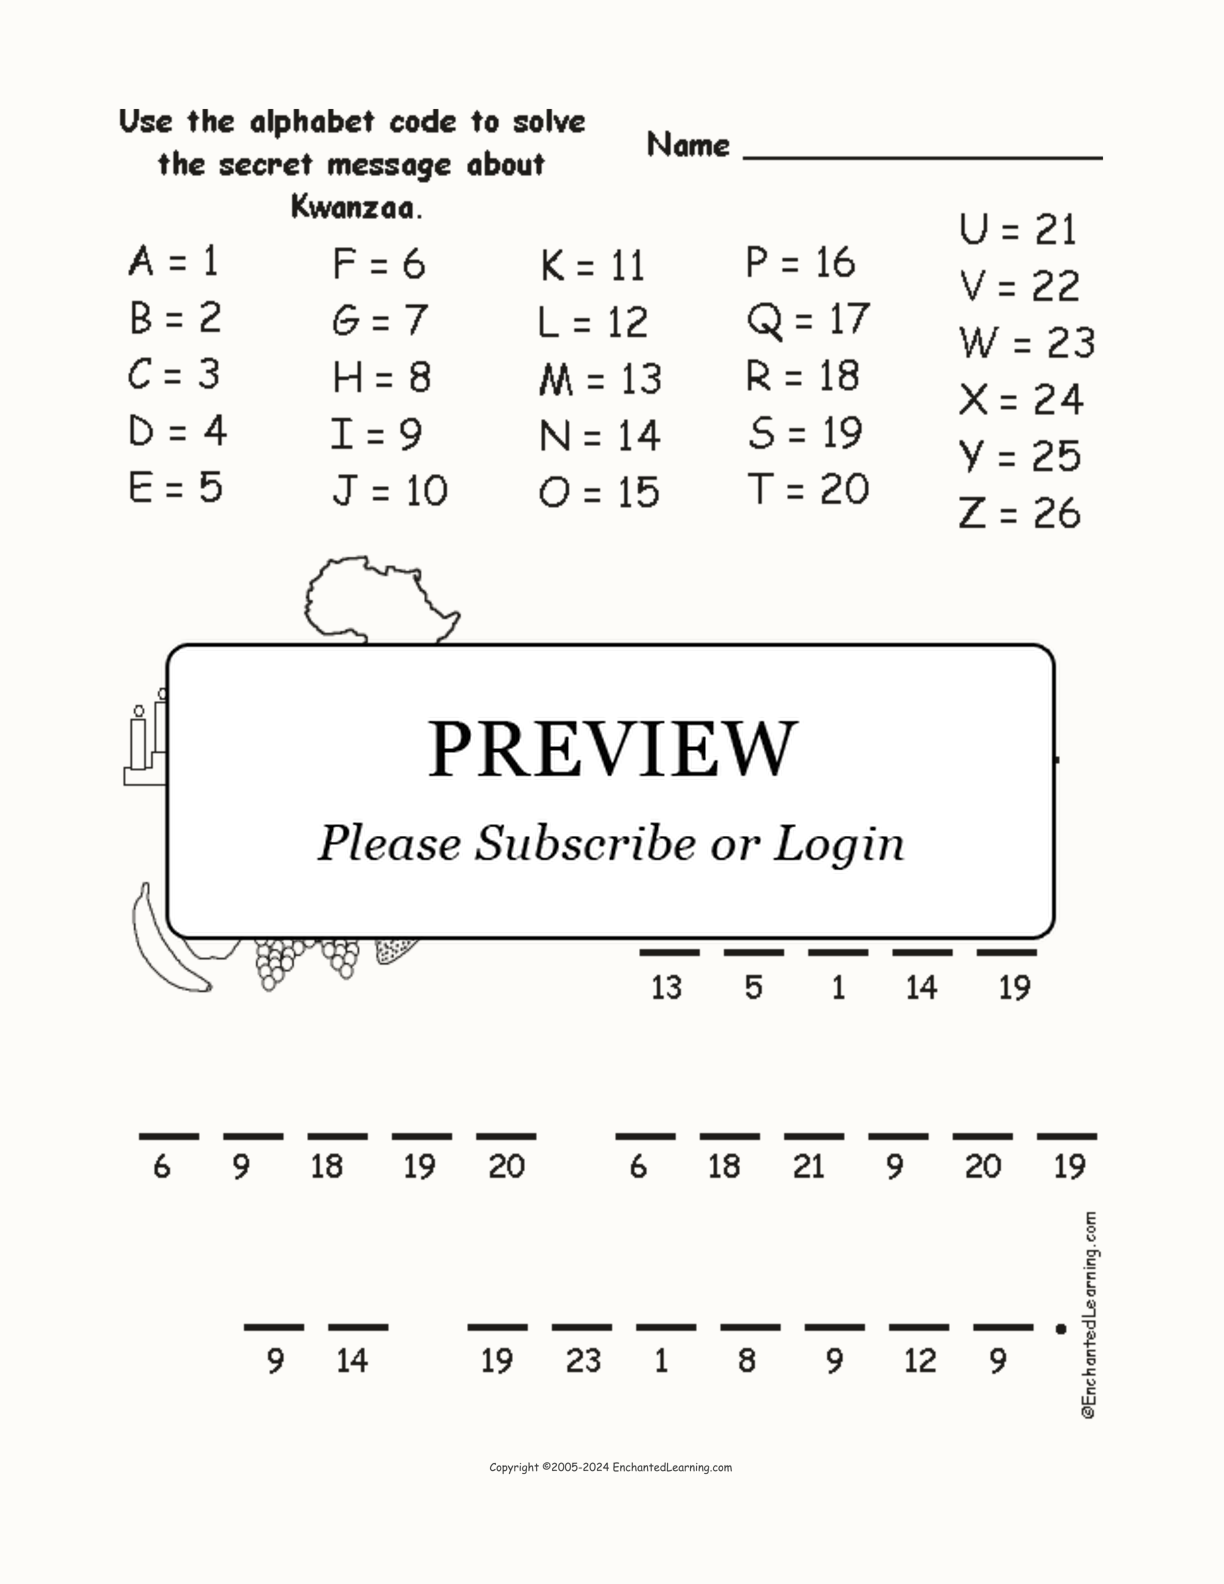 Kwanzaa Alphabet Code interactive worksheet page 1